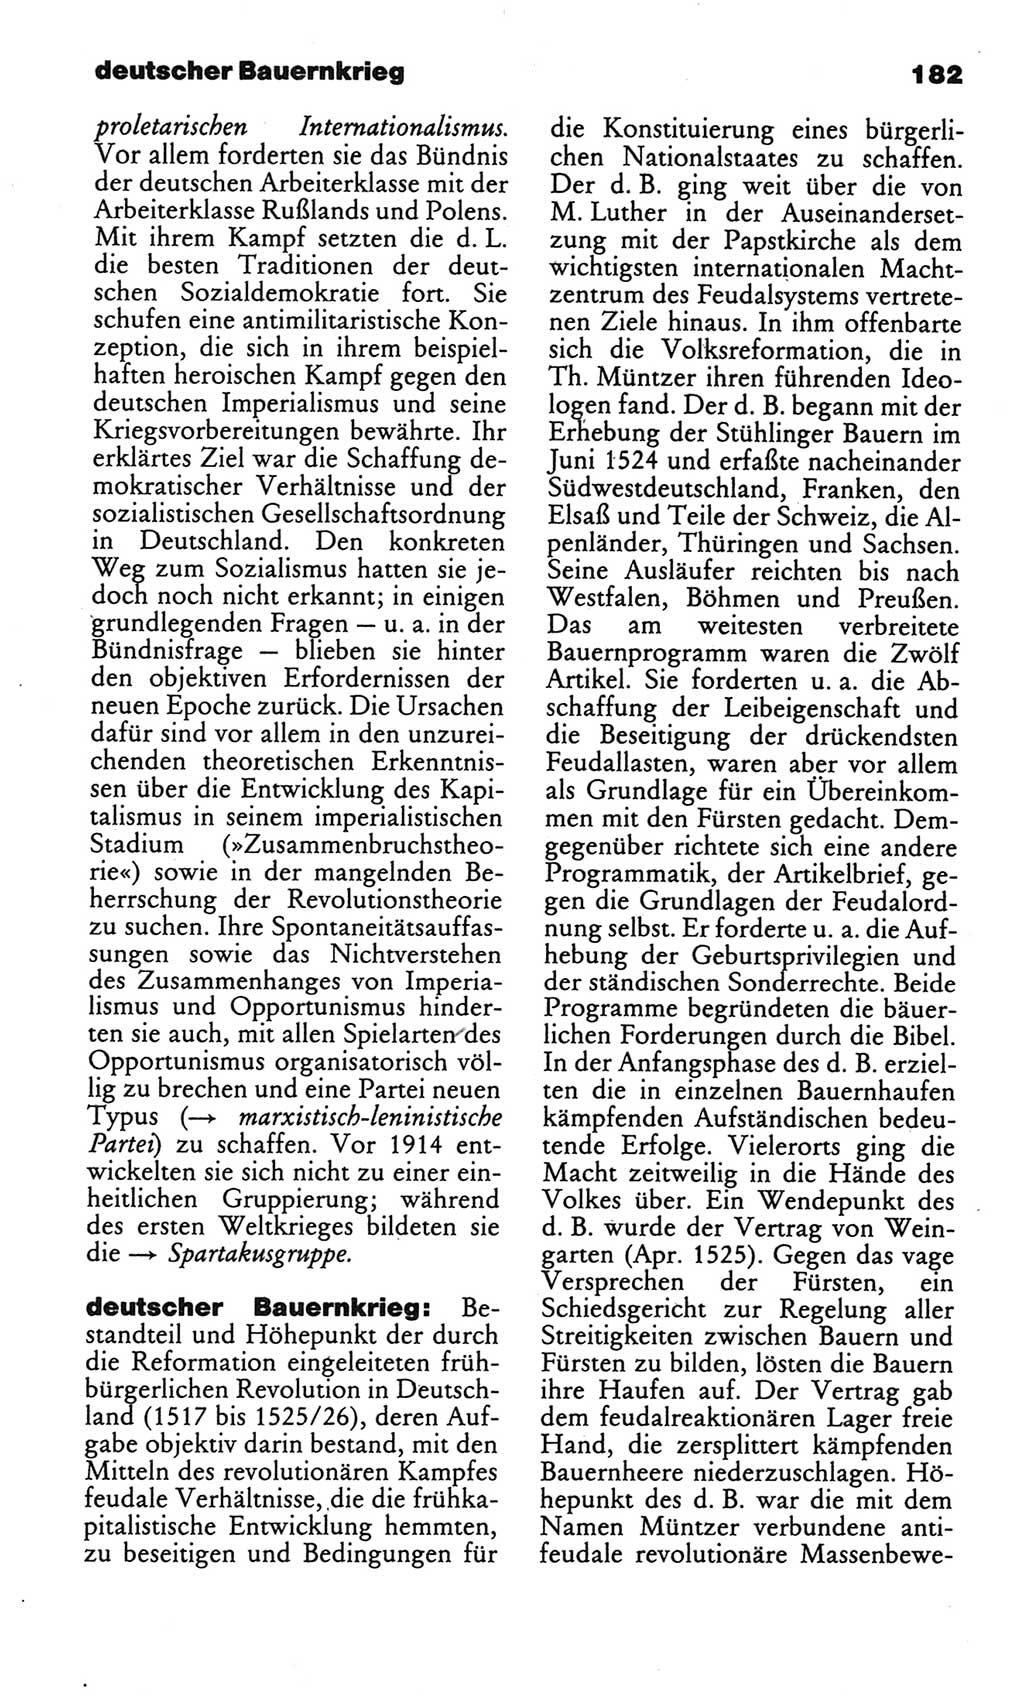 Kleines politisches Wörterbuch [Deutsche Demokratische Republik (DDR)] 1986, Seite 182 (Kl. pol. Wb. DDR 1986, S. 182)